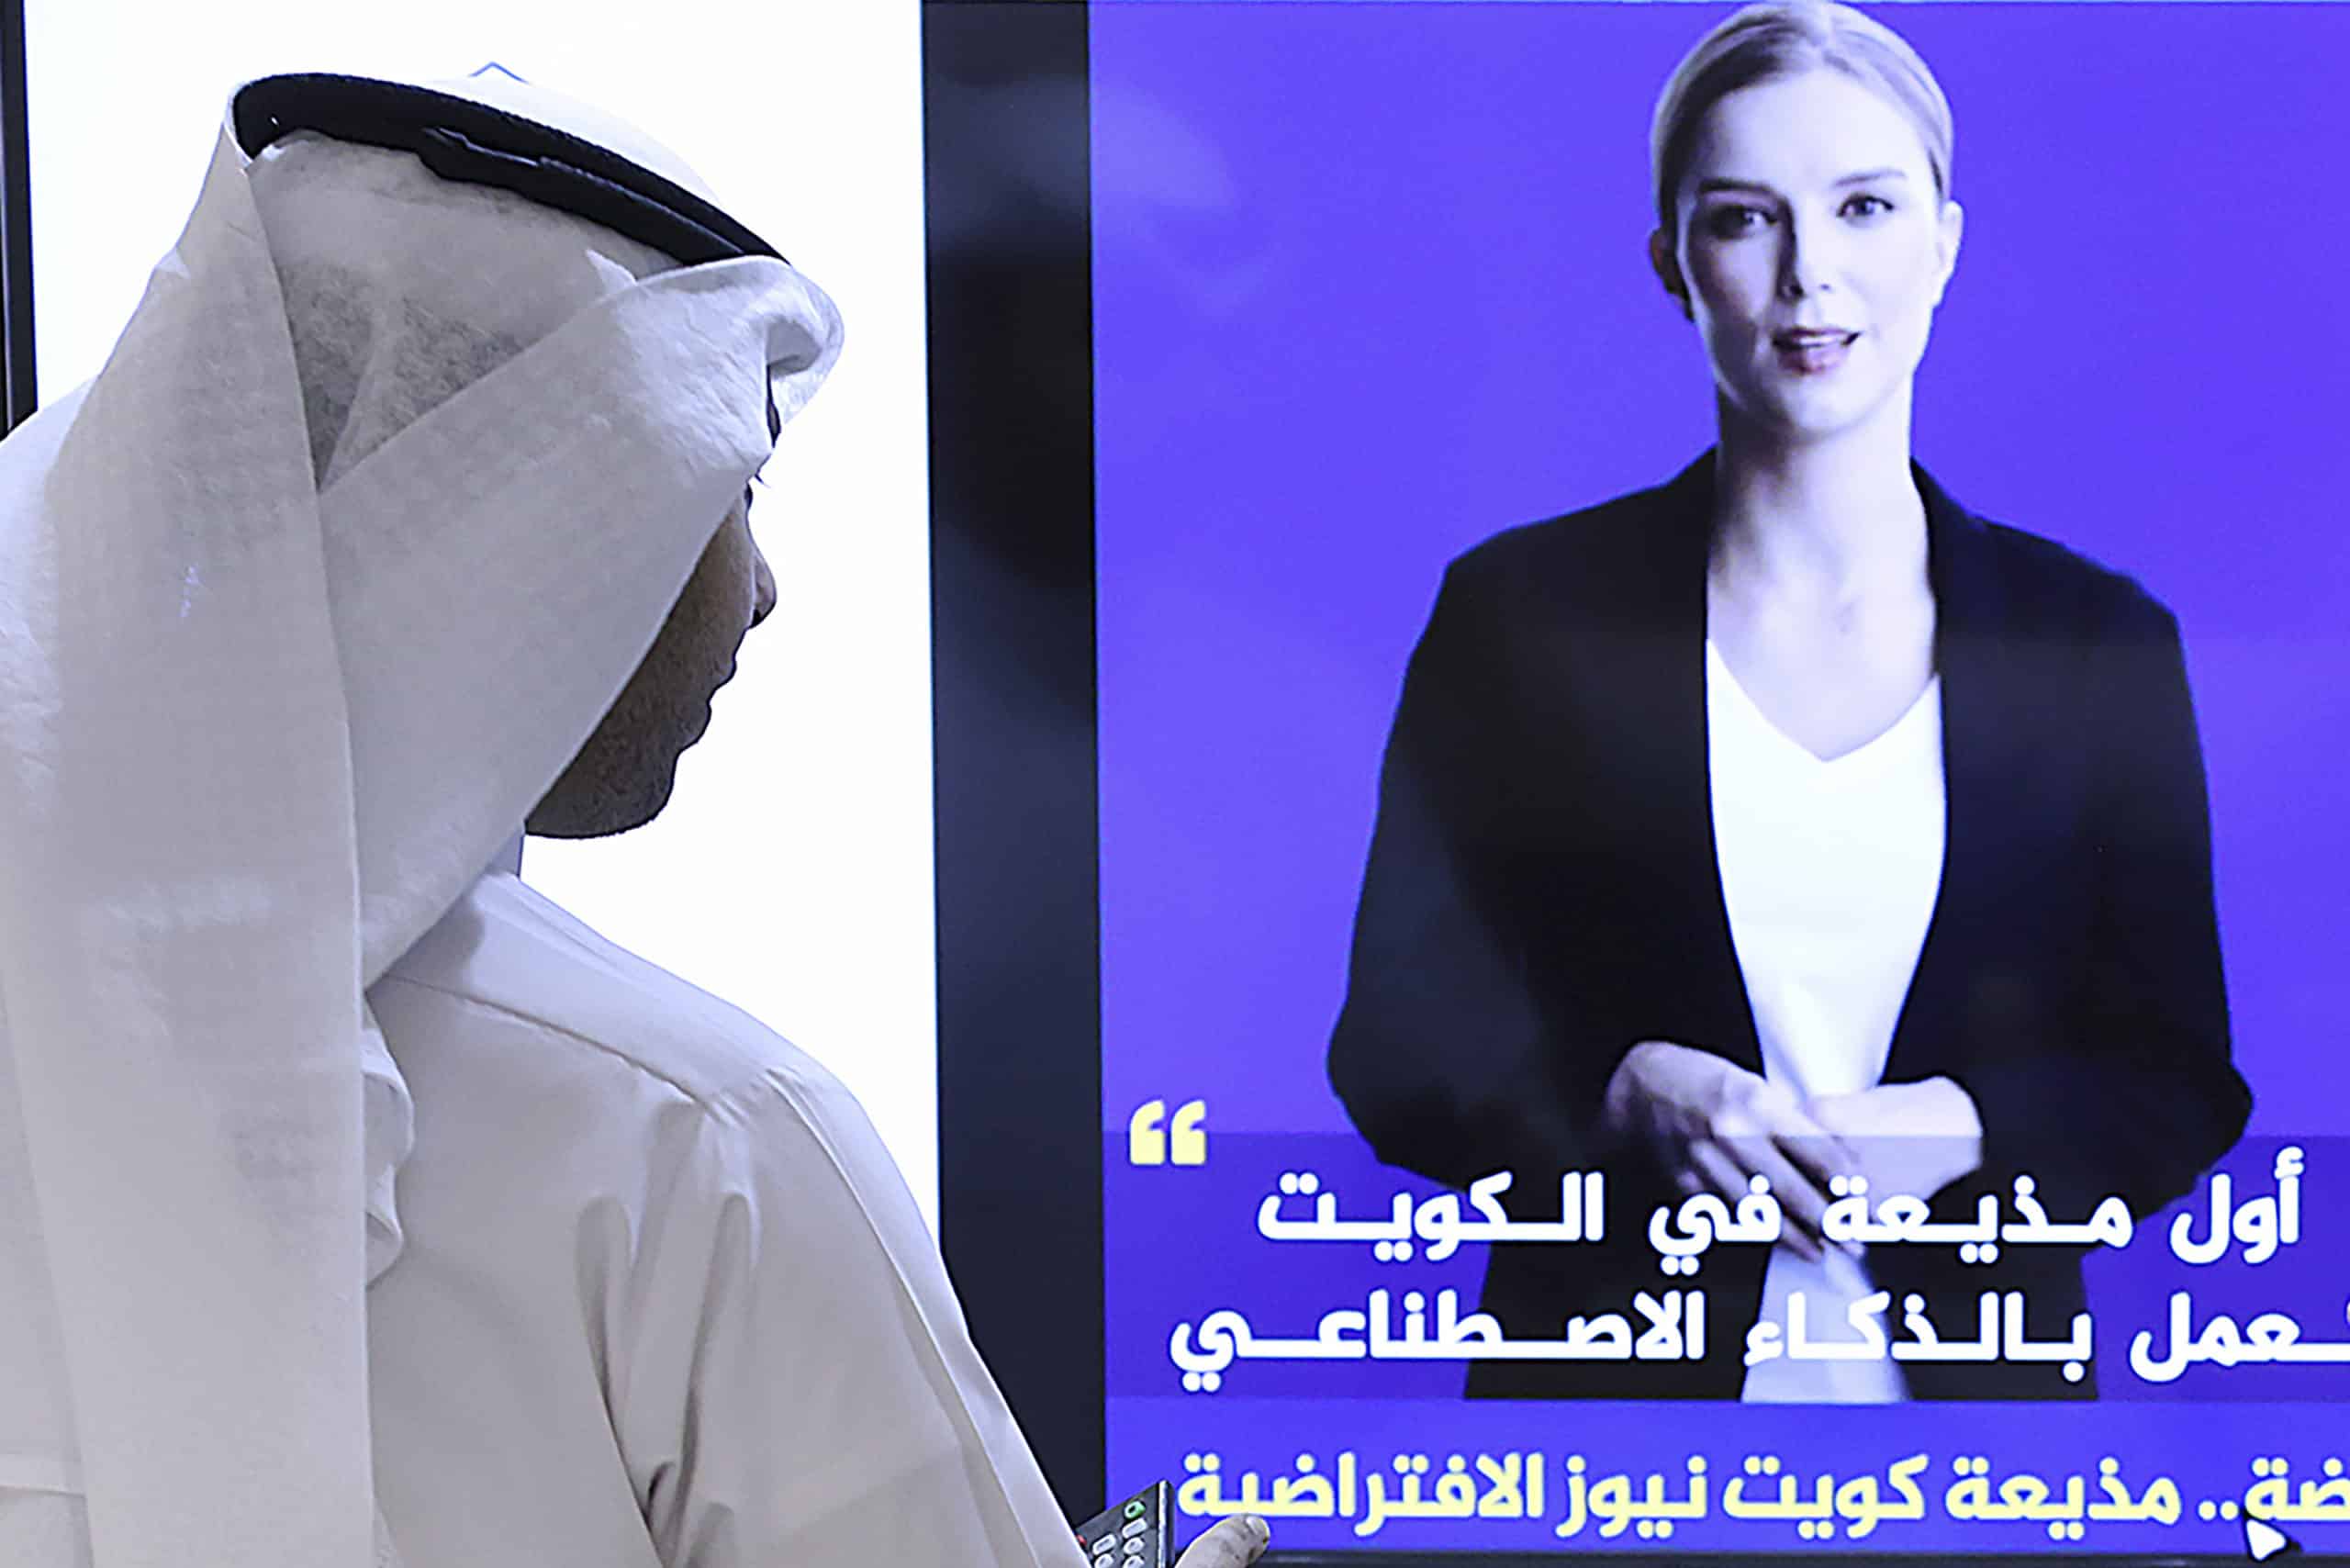 Kuwait da a conocer a presentadora de televisión virtual creada con IA